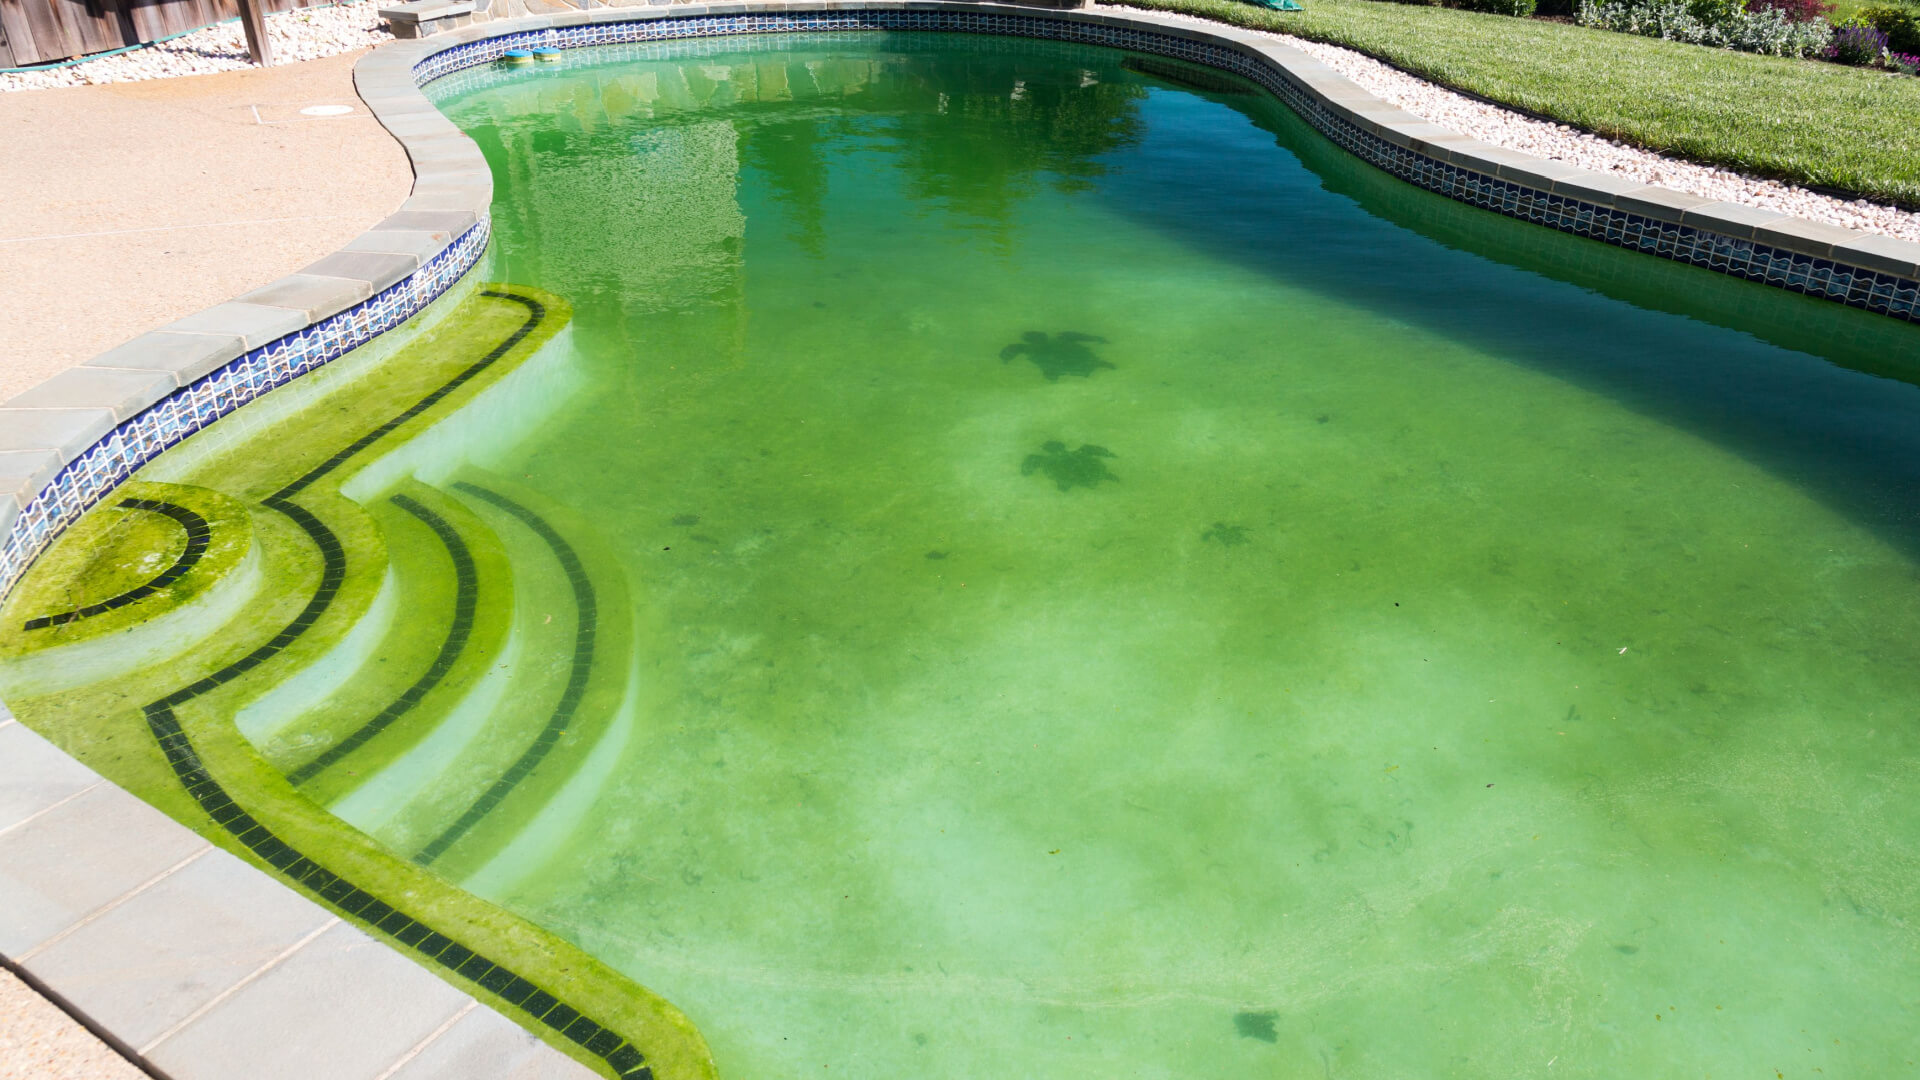 pool maintenance mistakes - pool algae